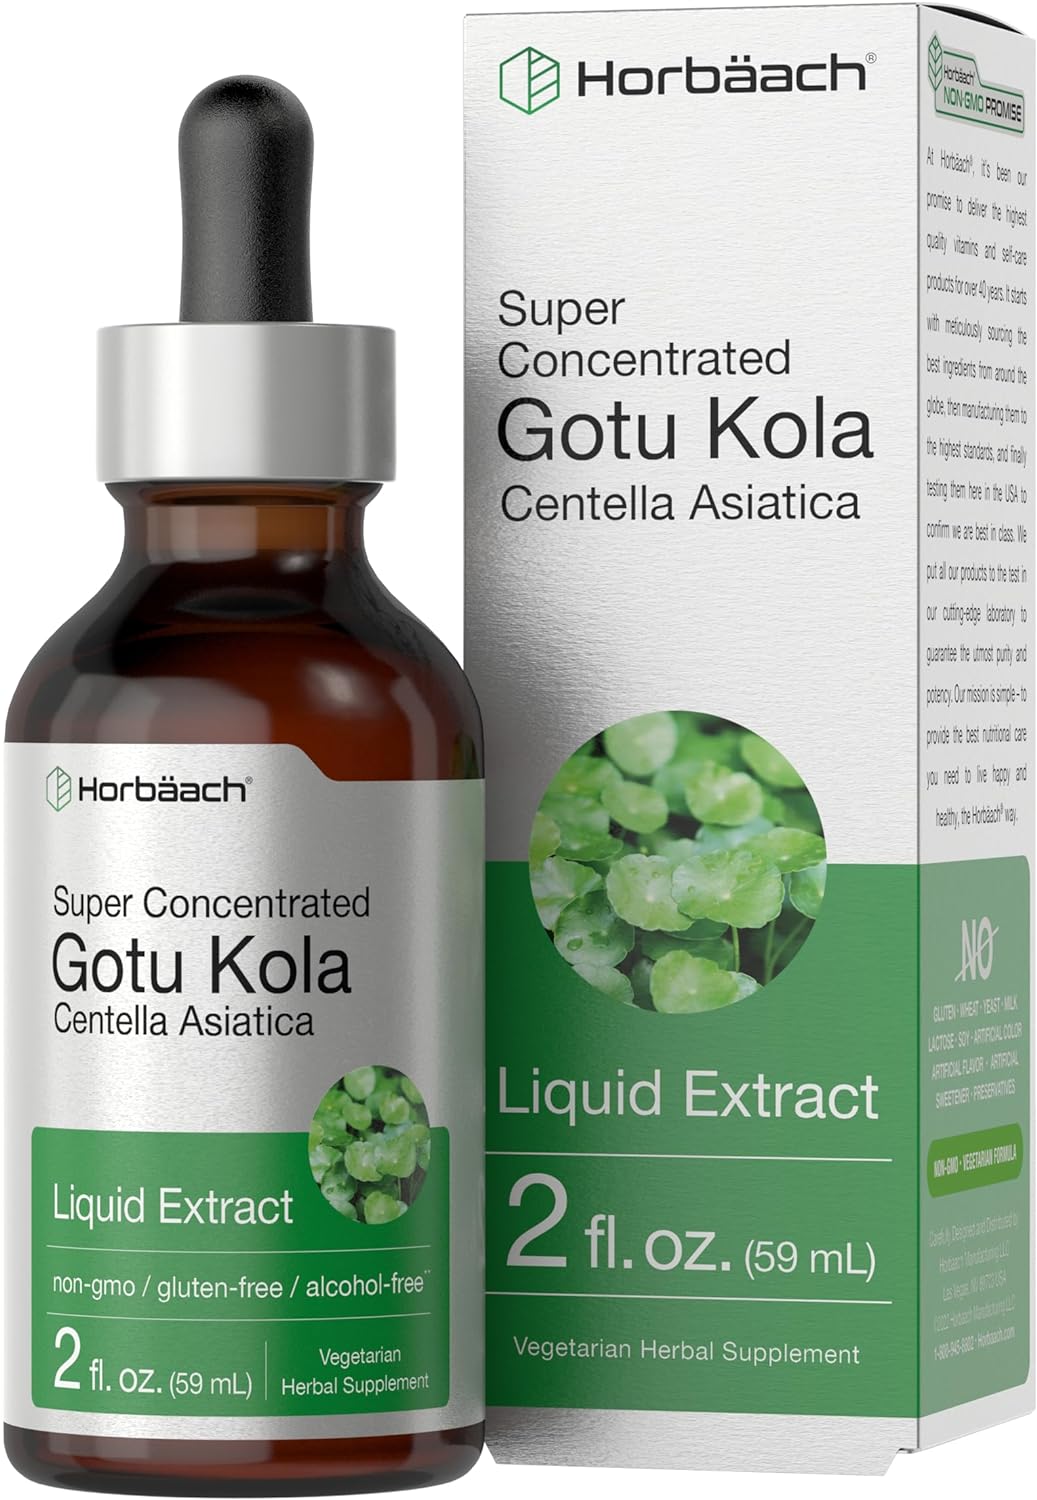 Horbach Gotu Kola Extract | 2 fl oz | Alcohol Free | Super Concentrated Liquid Herb Supplement | Vegetarian, Non-GMO, Gluten Free